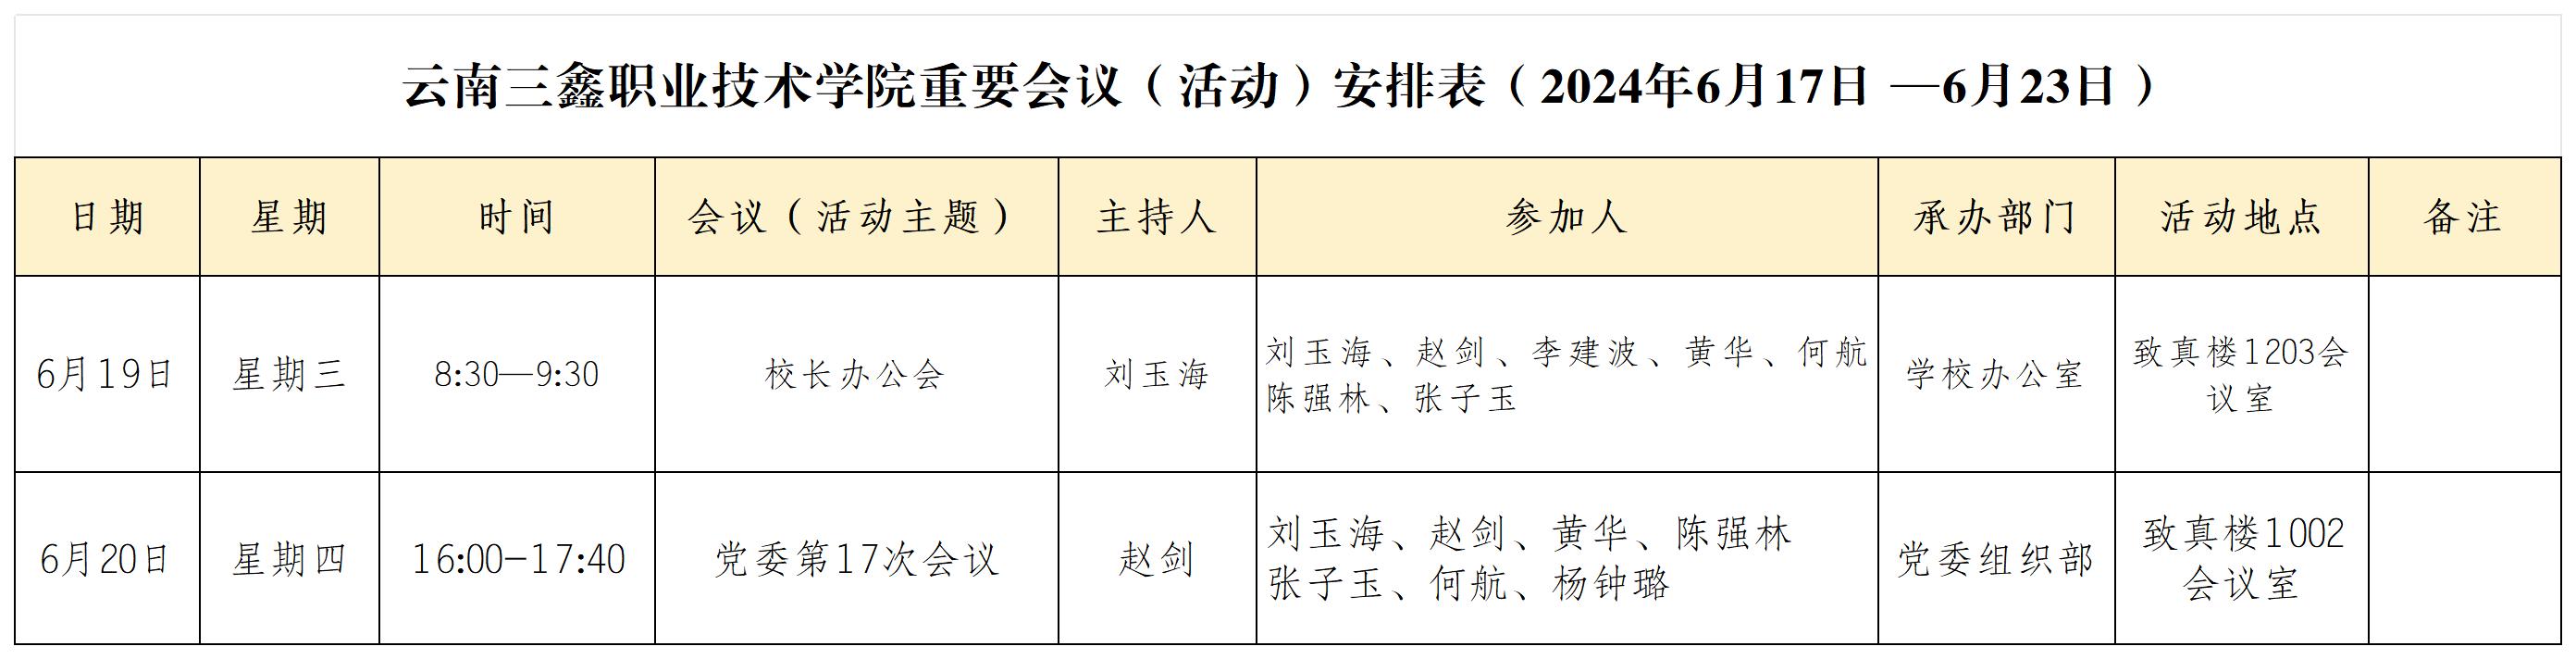 云南三鑫职业技术学院重要会议（活动）安排表（2024年6月17日 —6月23日）